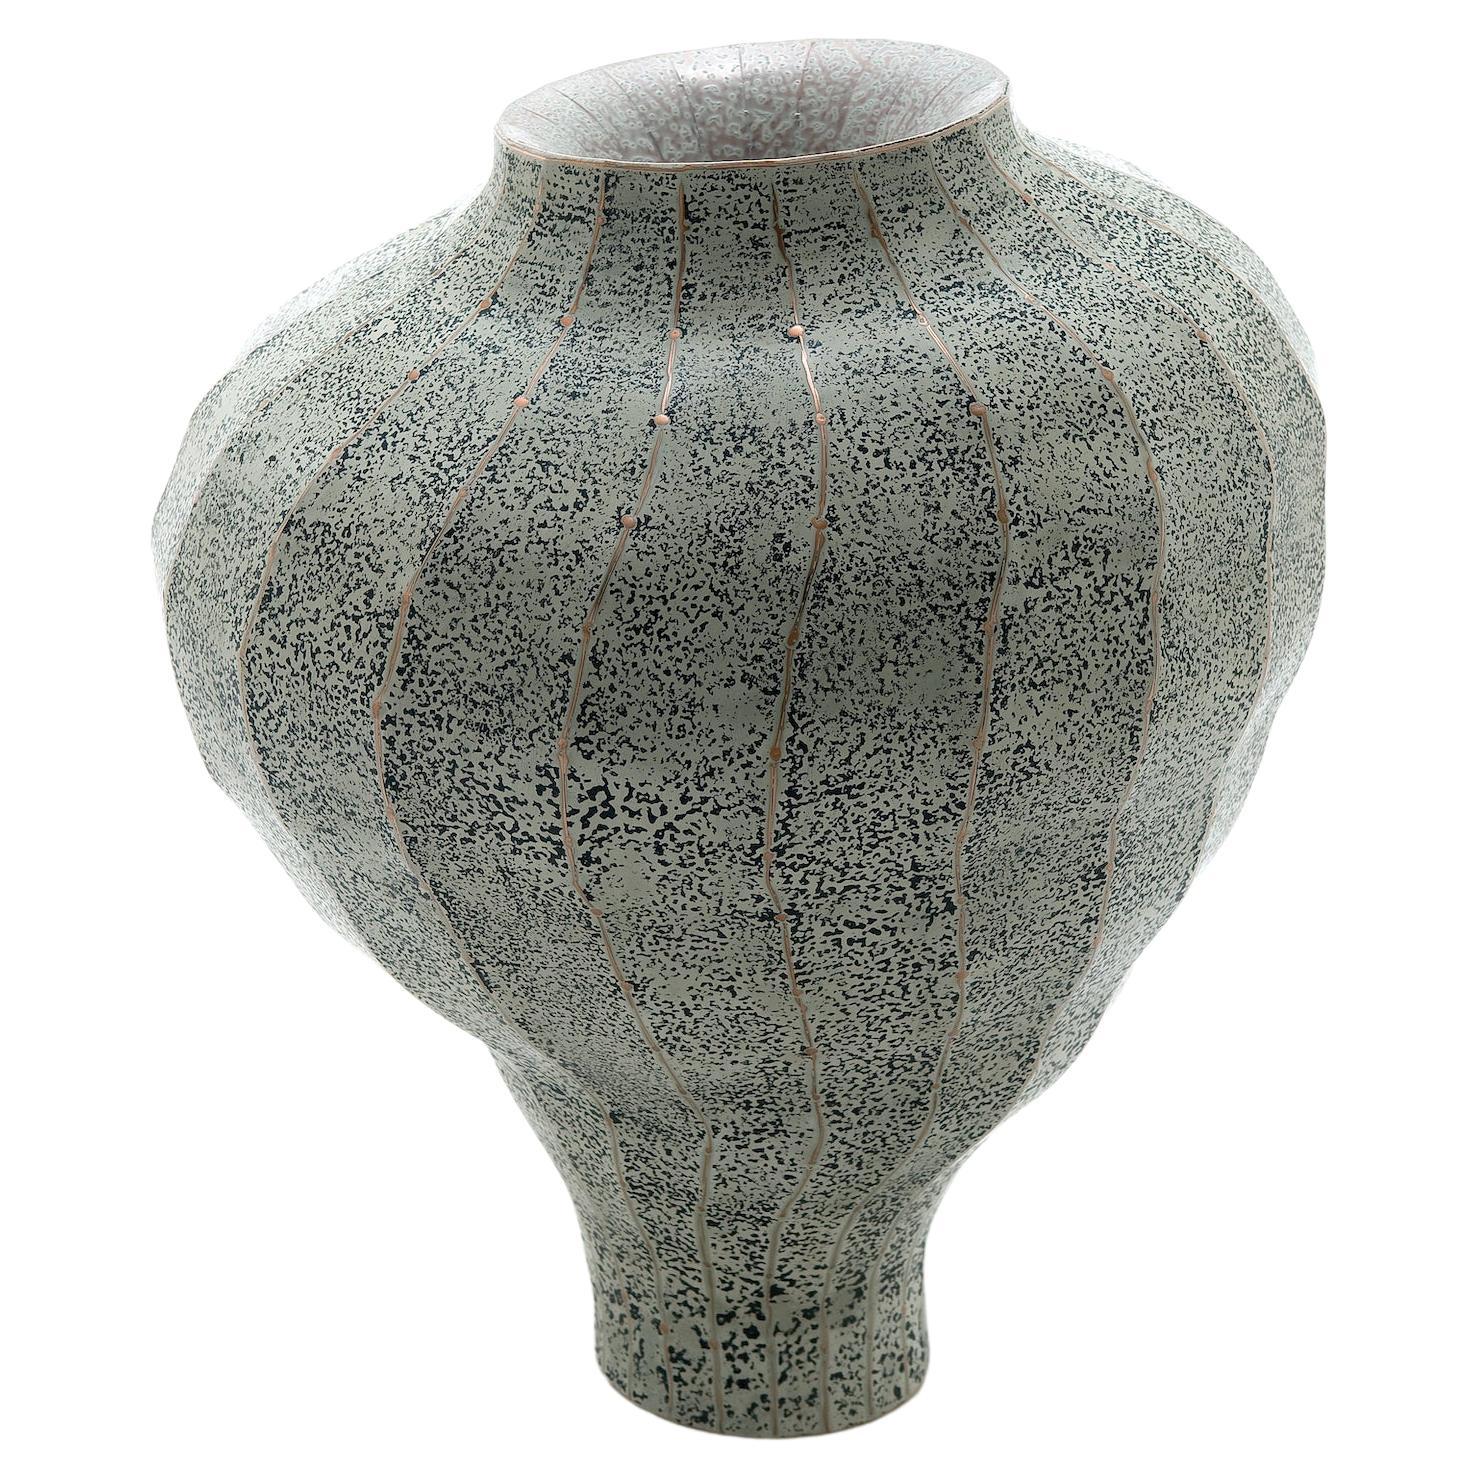 21st Century Sculptural Vase "Transition Sign" by Jaiik Lee Copper Vessels